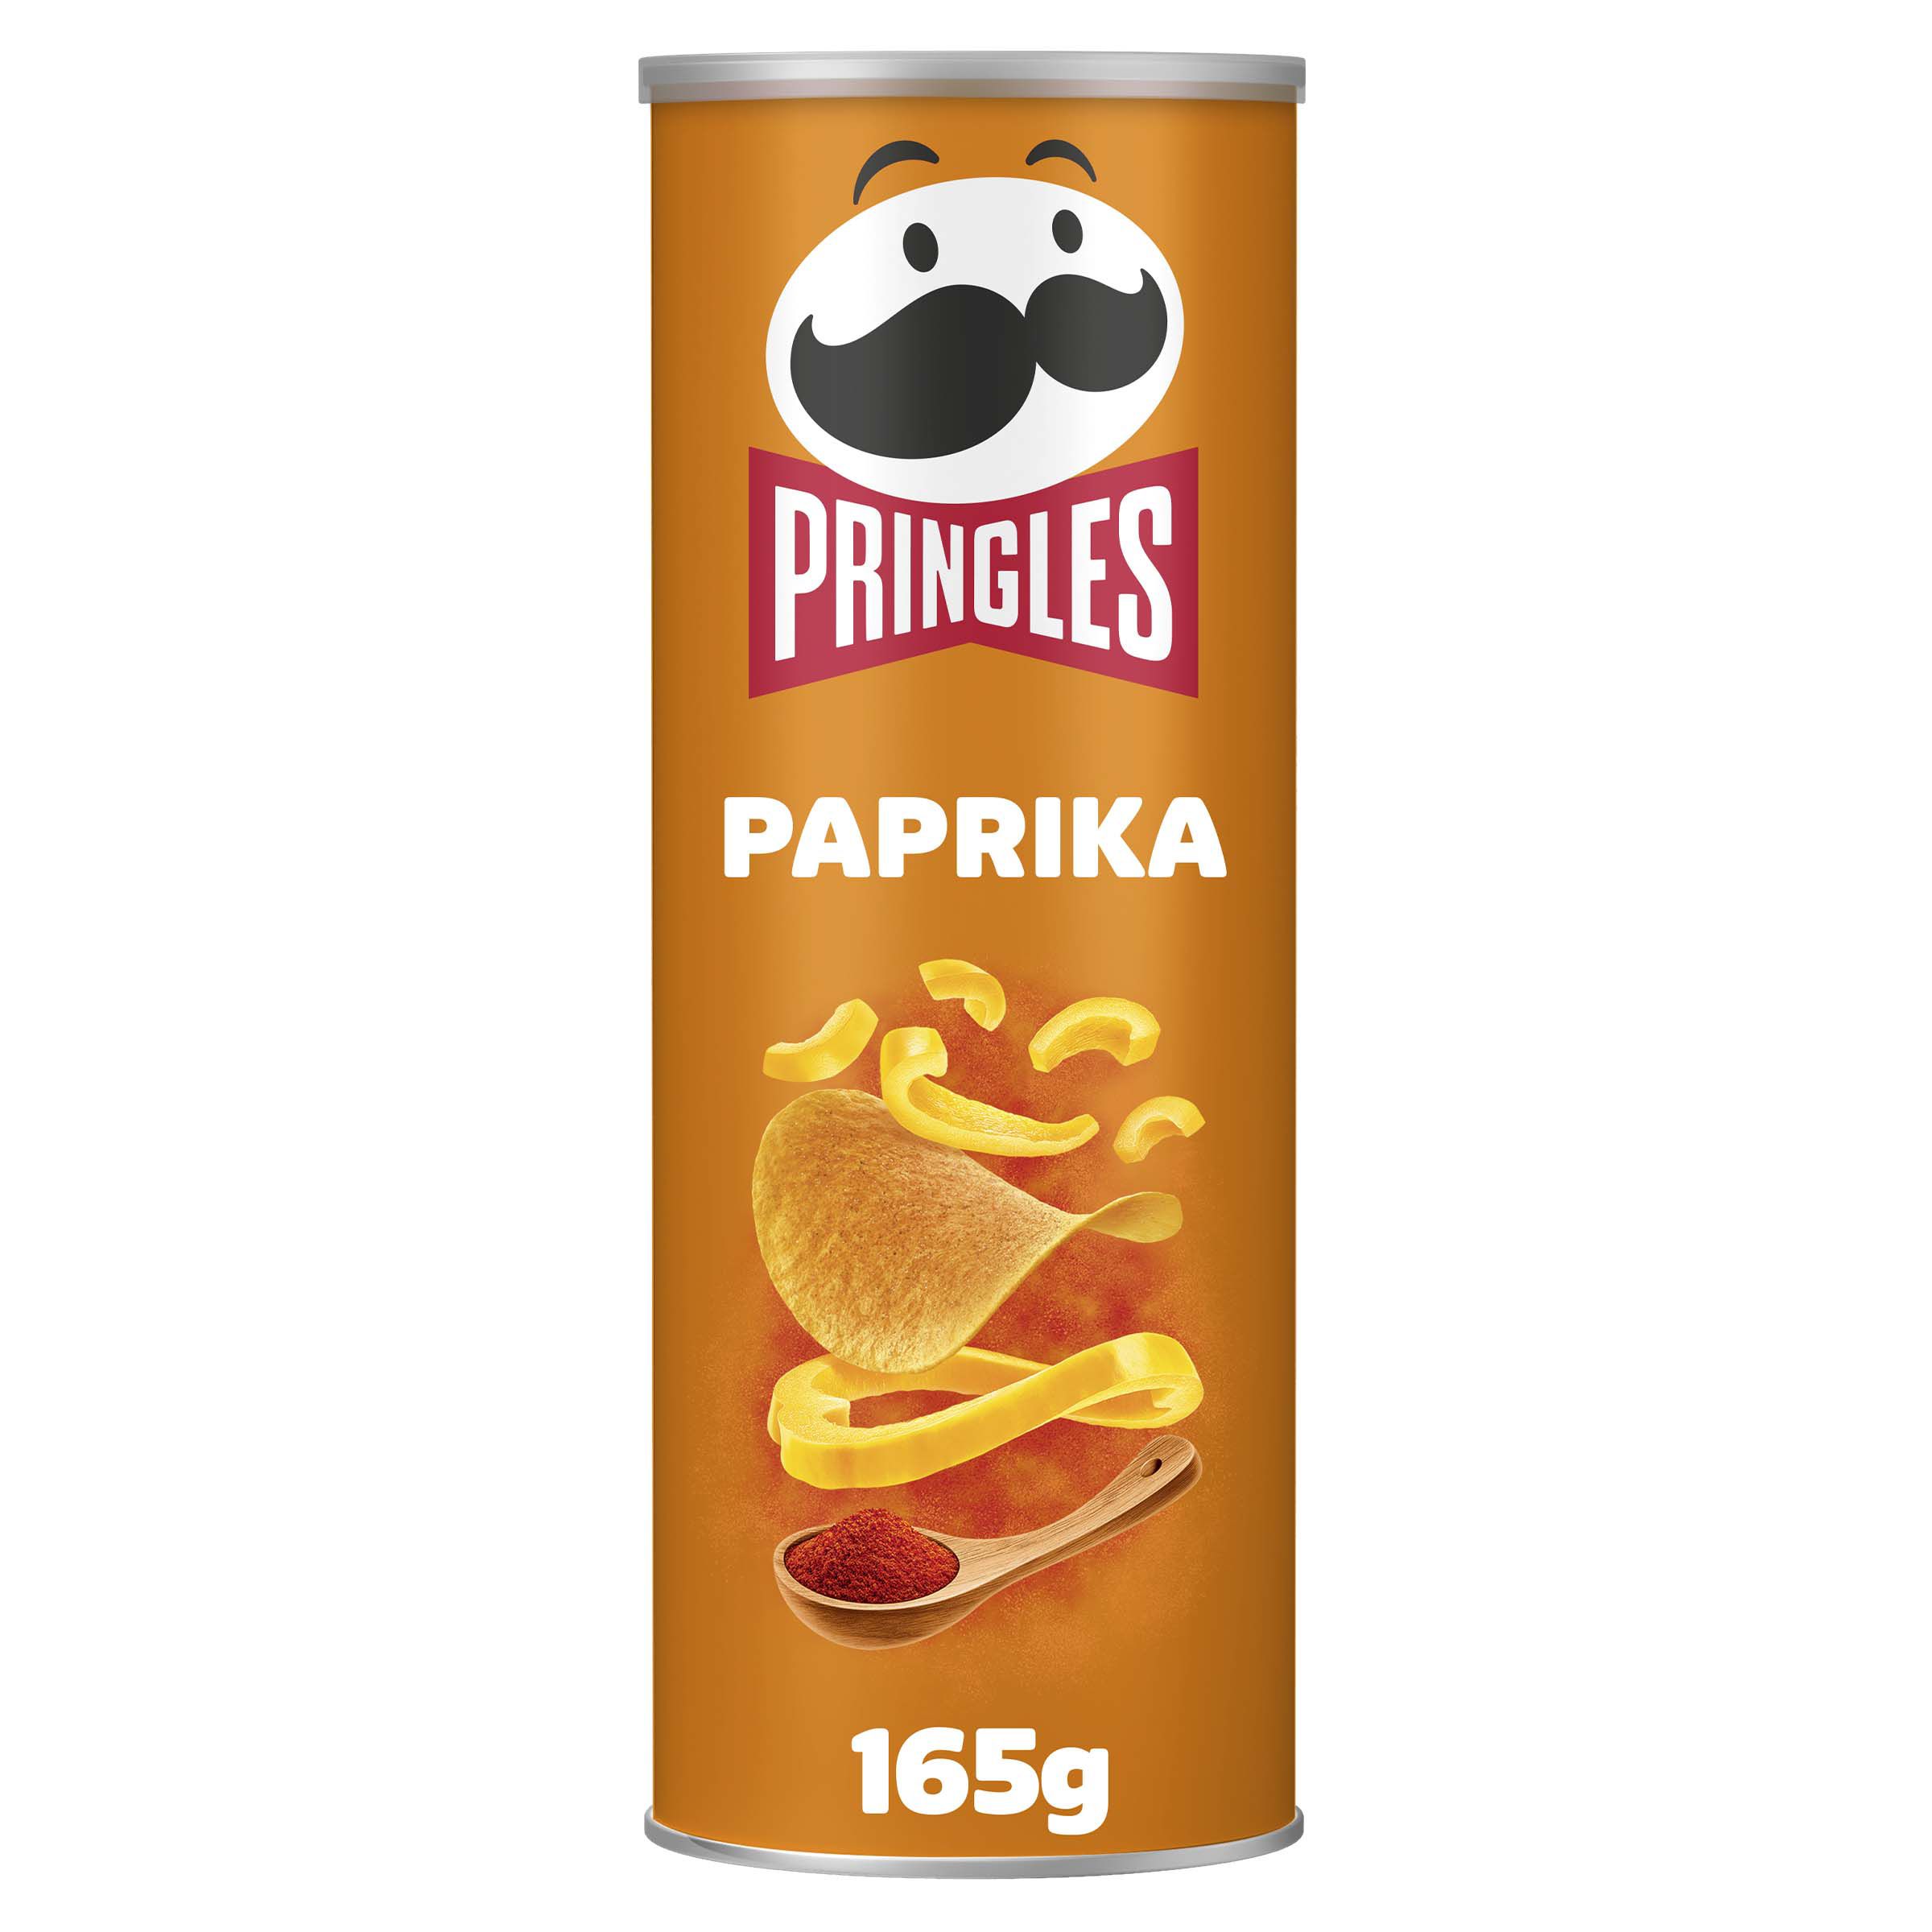 Large Paprika crisps from Pringles UK | Kellogg's